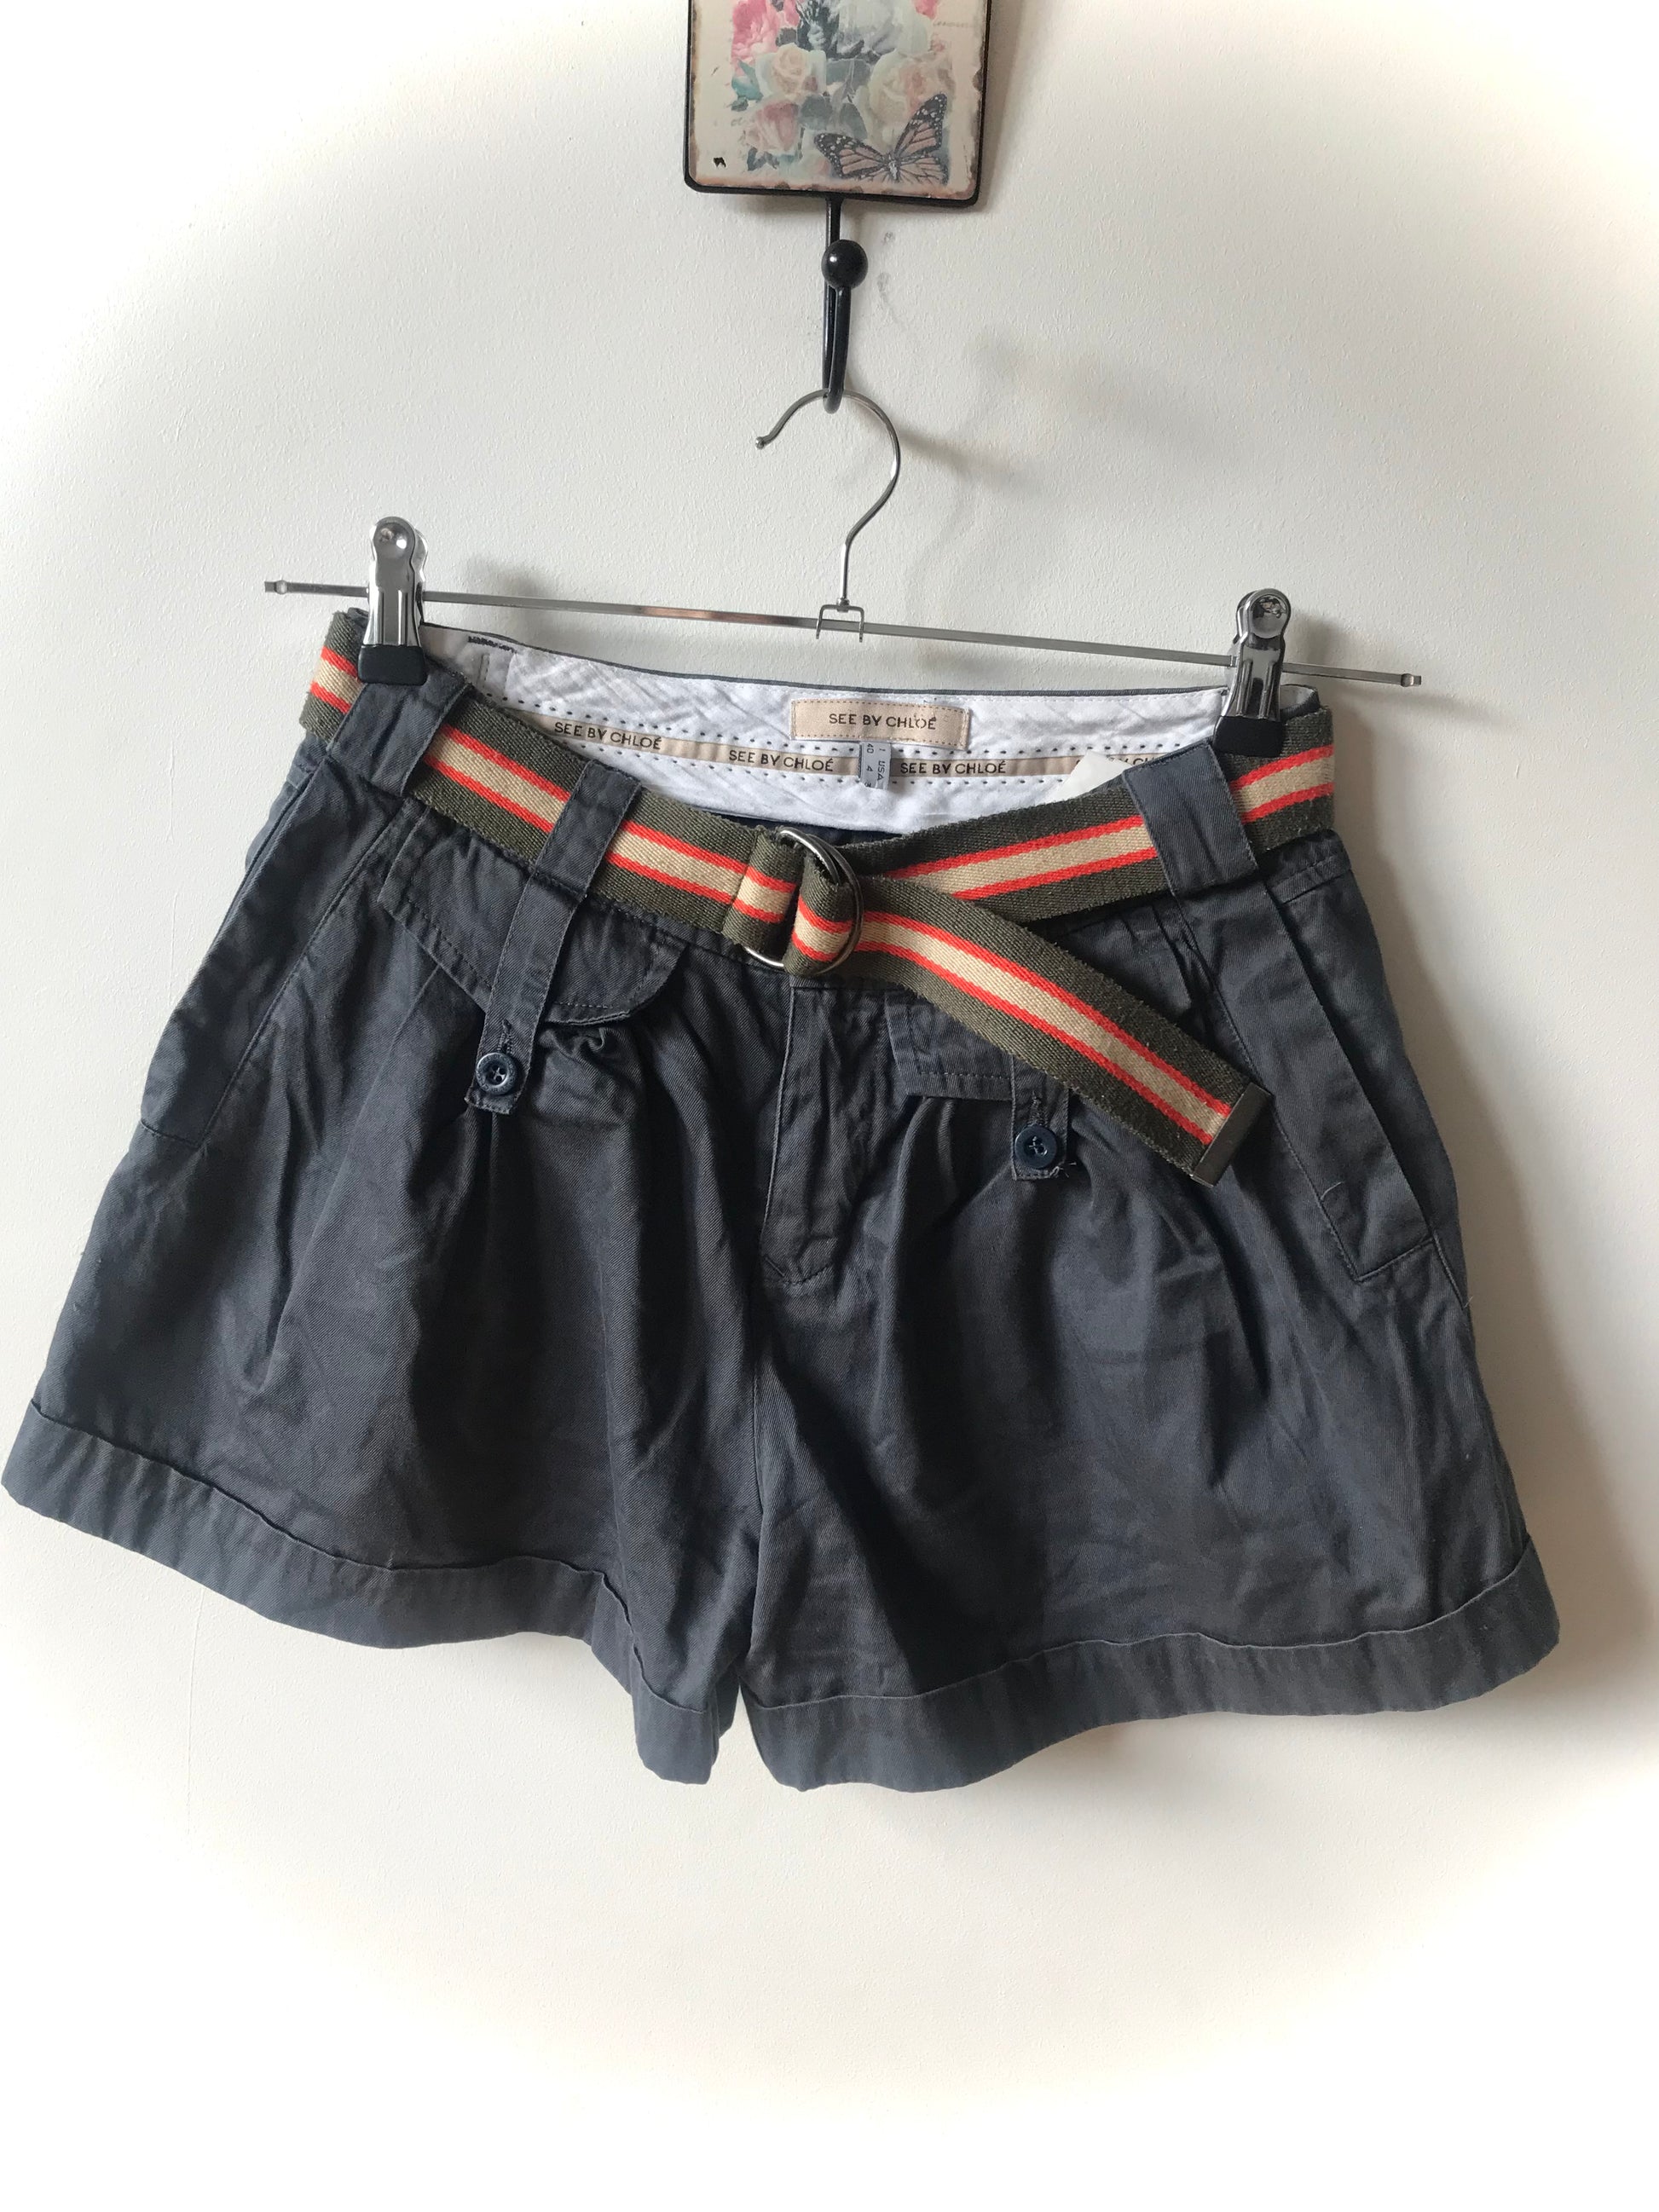 Vintage Chloe shorts